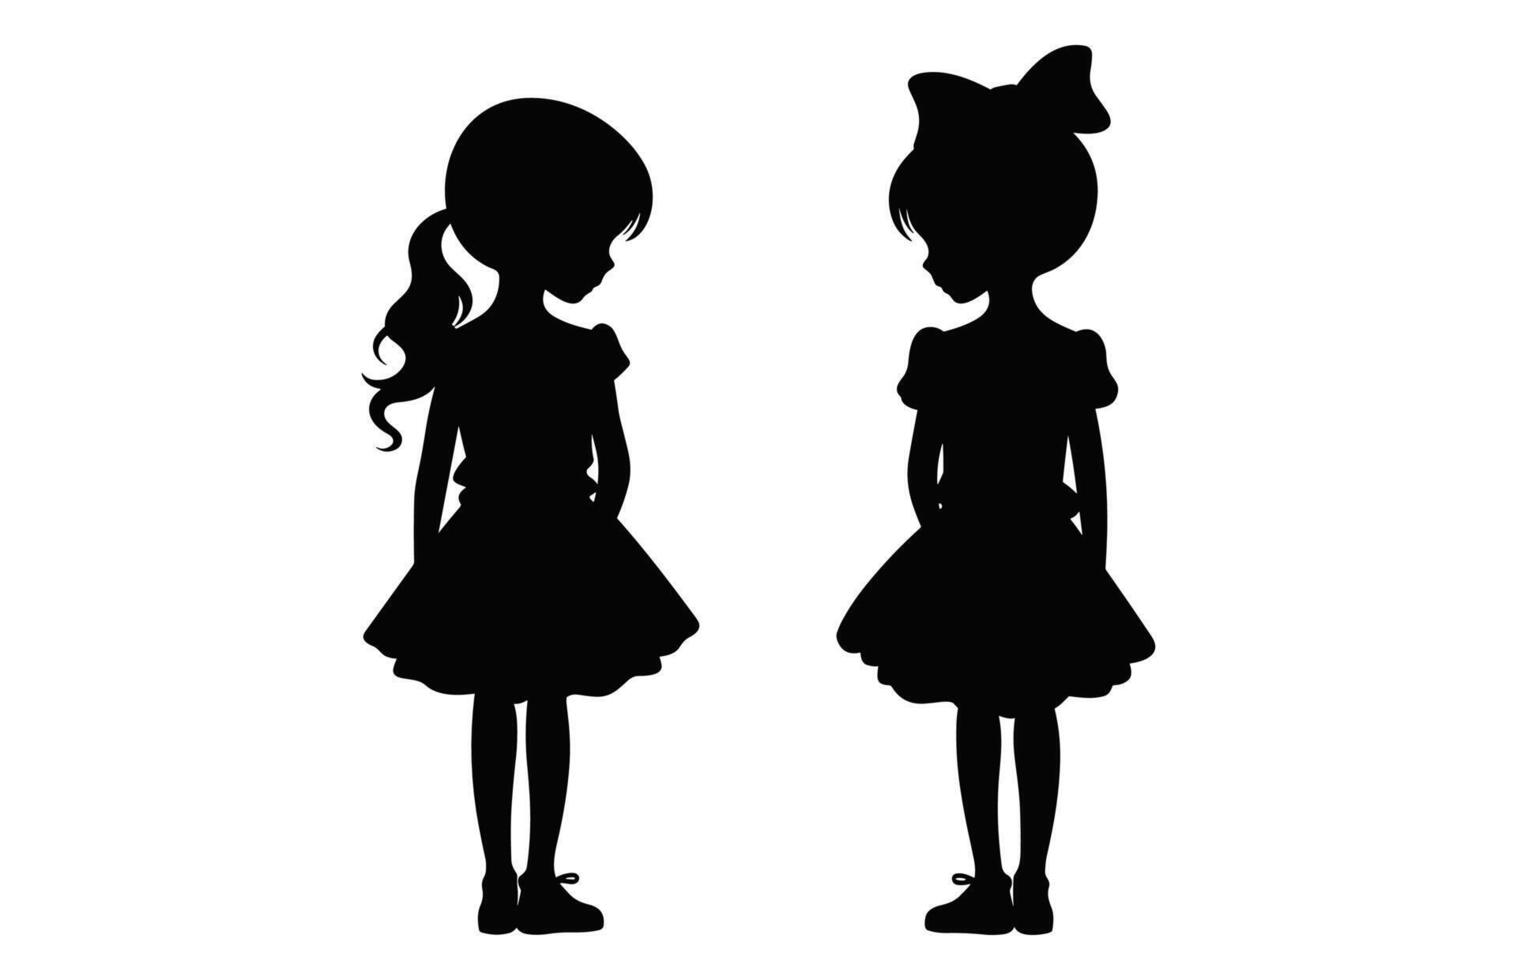 süß Zwilling Schwester Silhouette schwarz Vektor, Zwillinge Mädchen Silhouette isoliert auf ein Weiß Hintergrund vektor